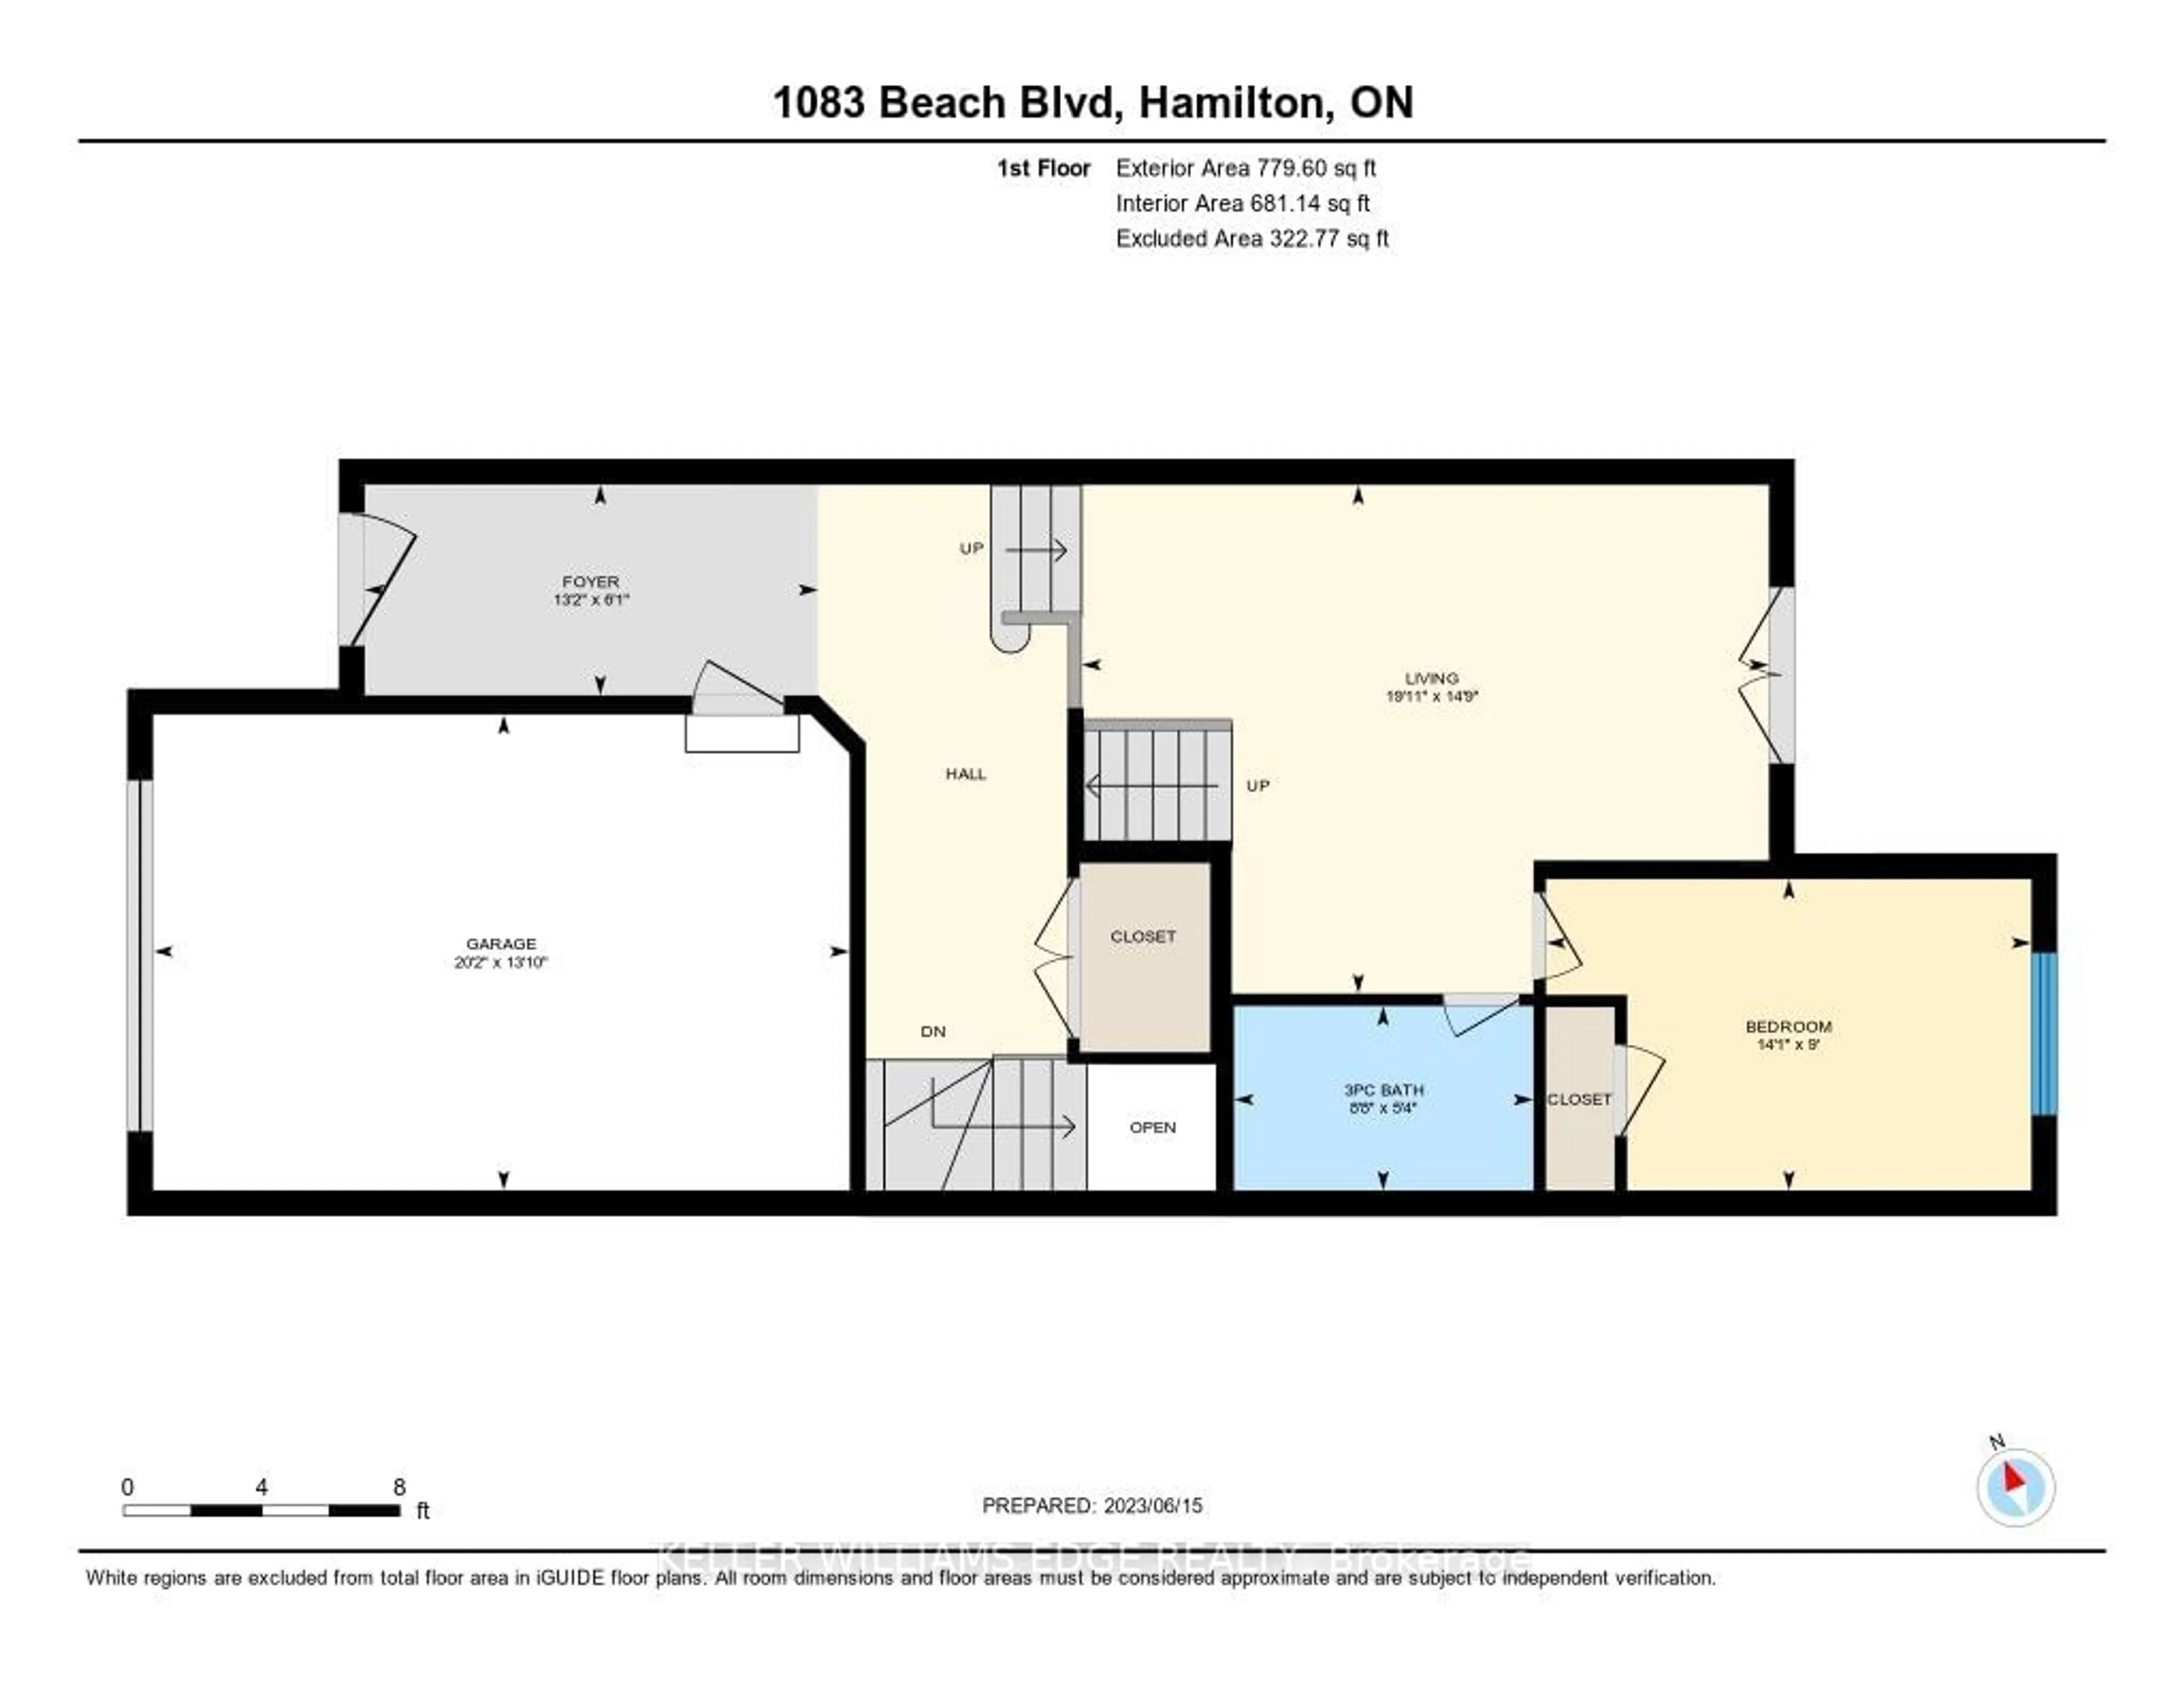 Floor plan for 1083 Beach Blvd, Hamilton Ontario L8H 6Z9